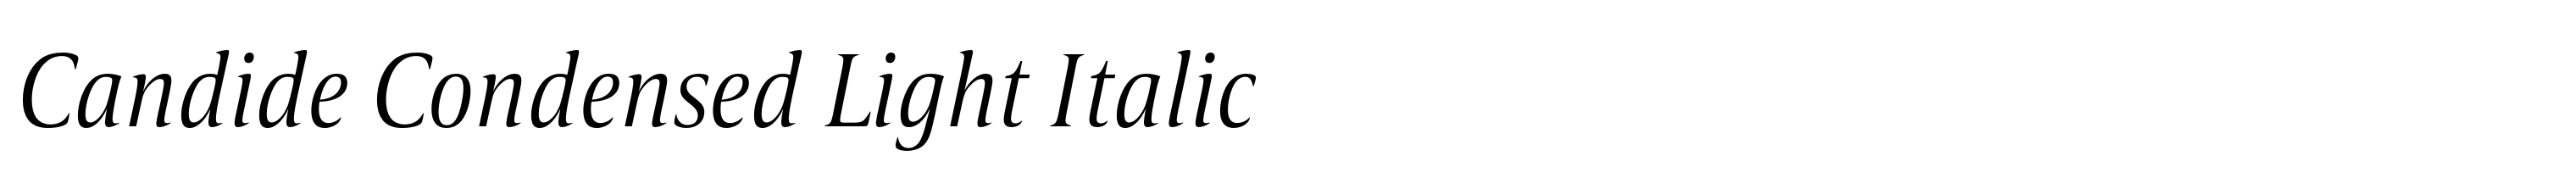 Candide Condensed Light Italic